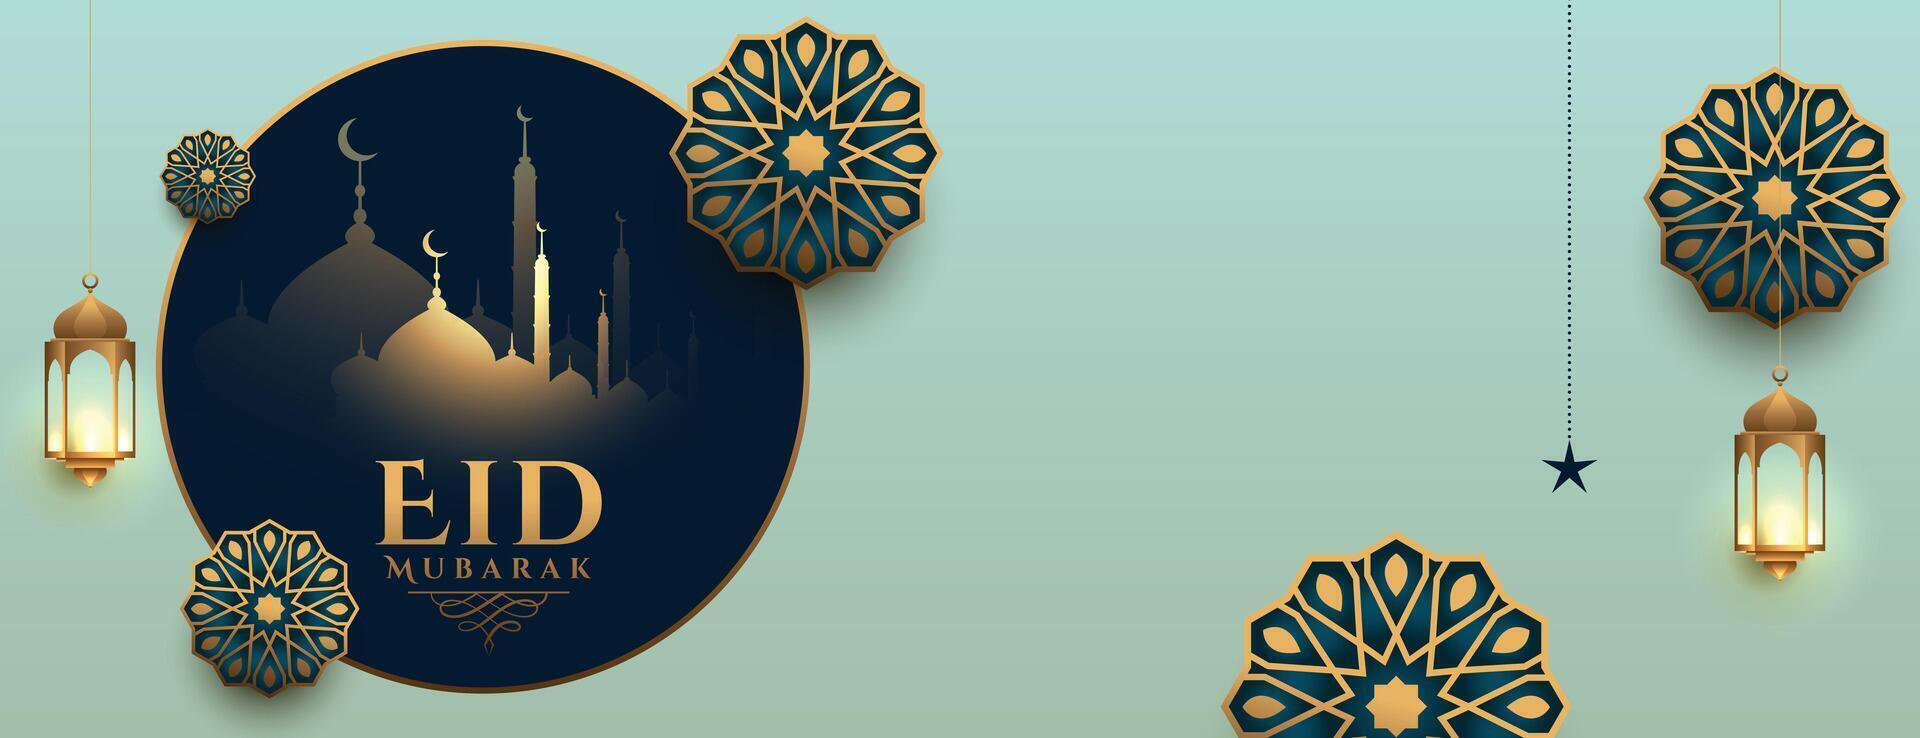 realistisk eid mubarak islamic baner design vektor